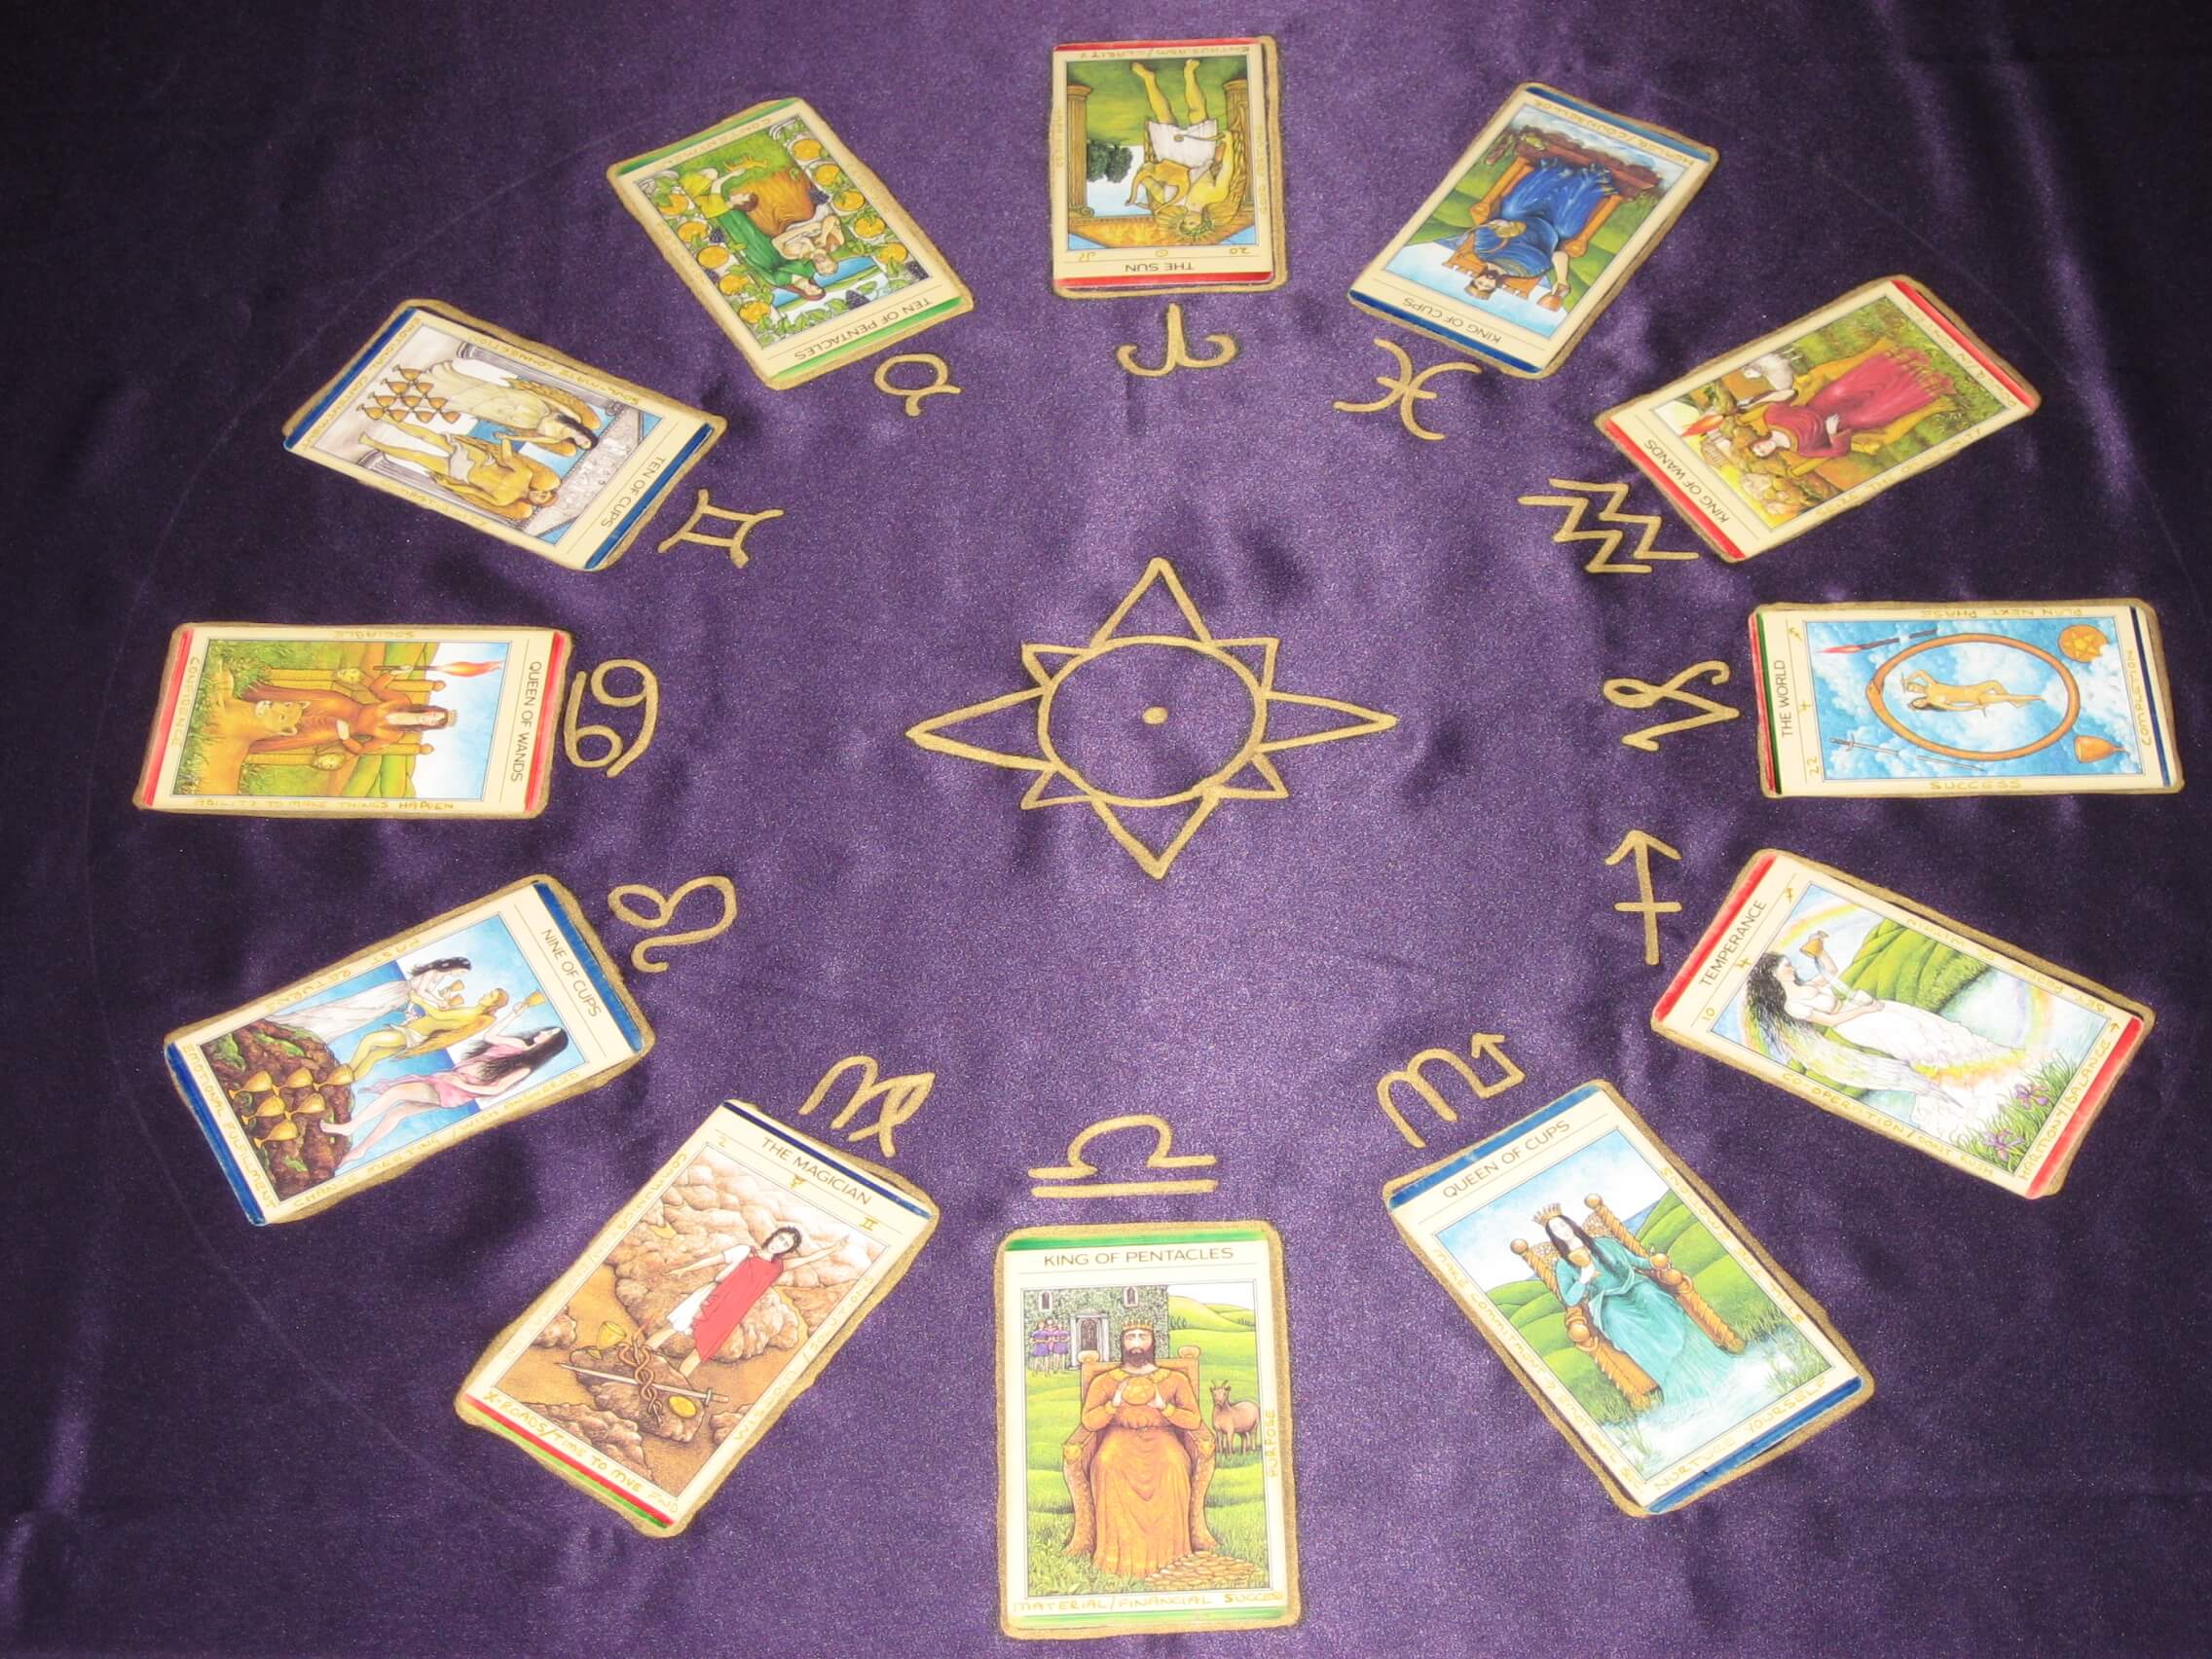 Cung hoàng đạo được sử dụng trong bói bài Tarot rất hiệu nghiệm và phổ biến ở các nước phương Tây